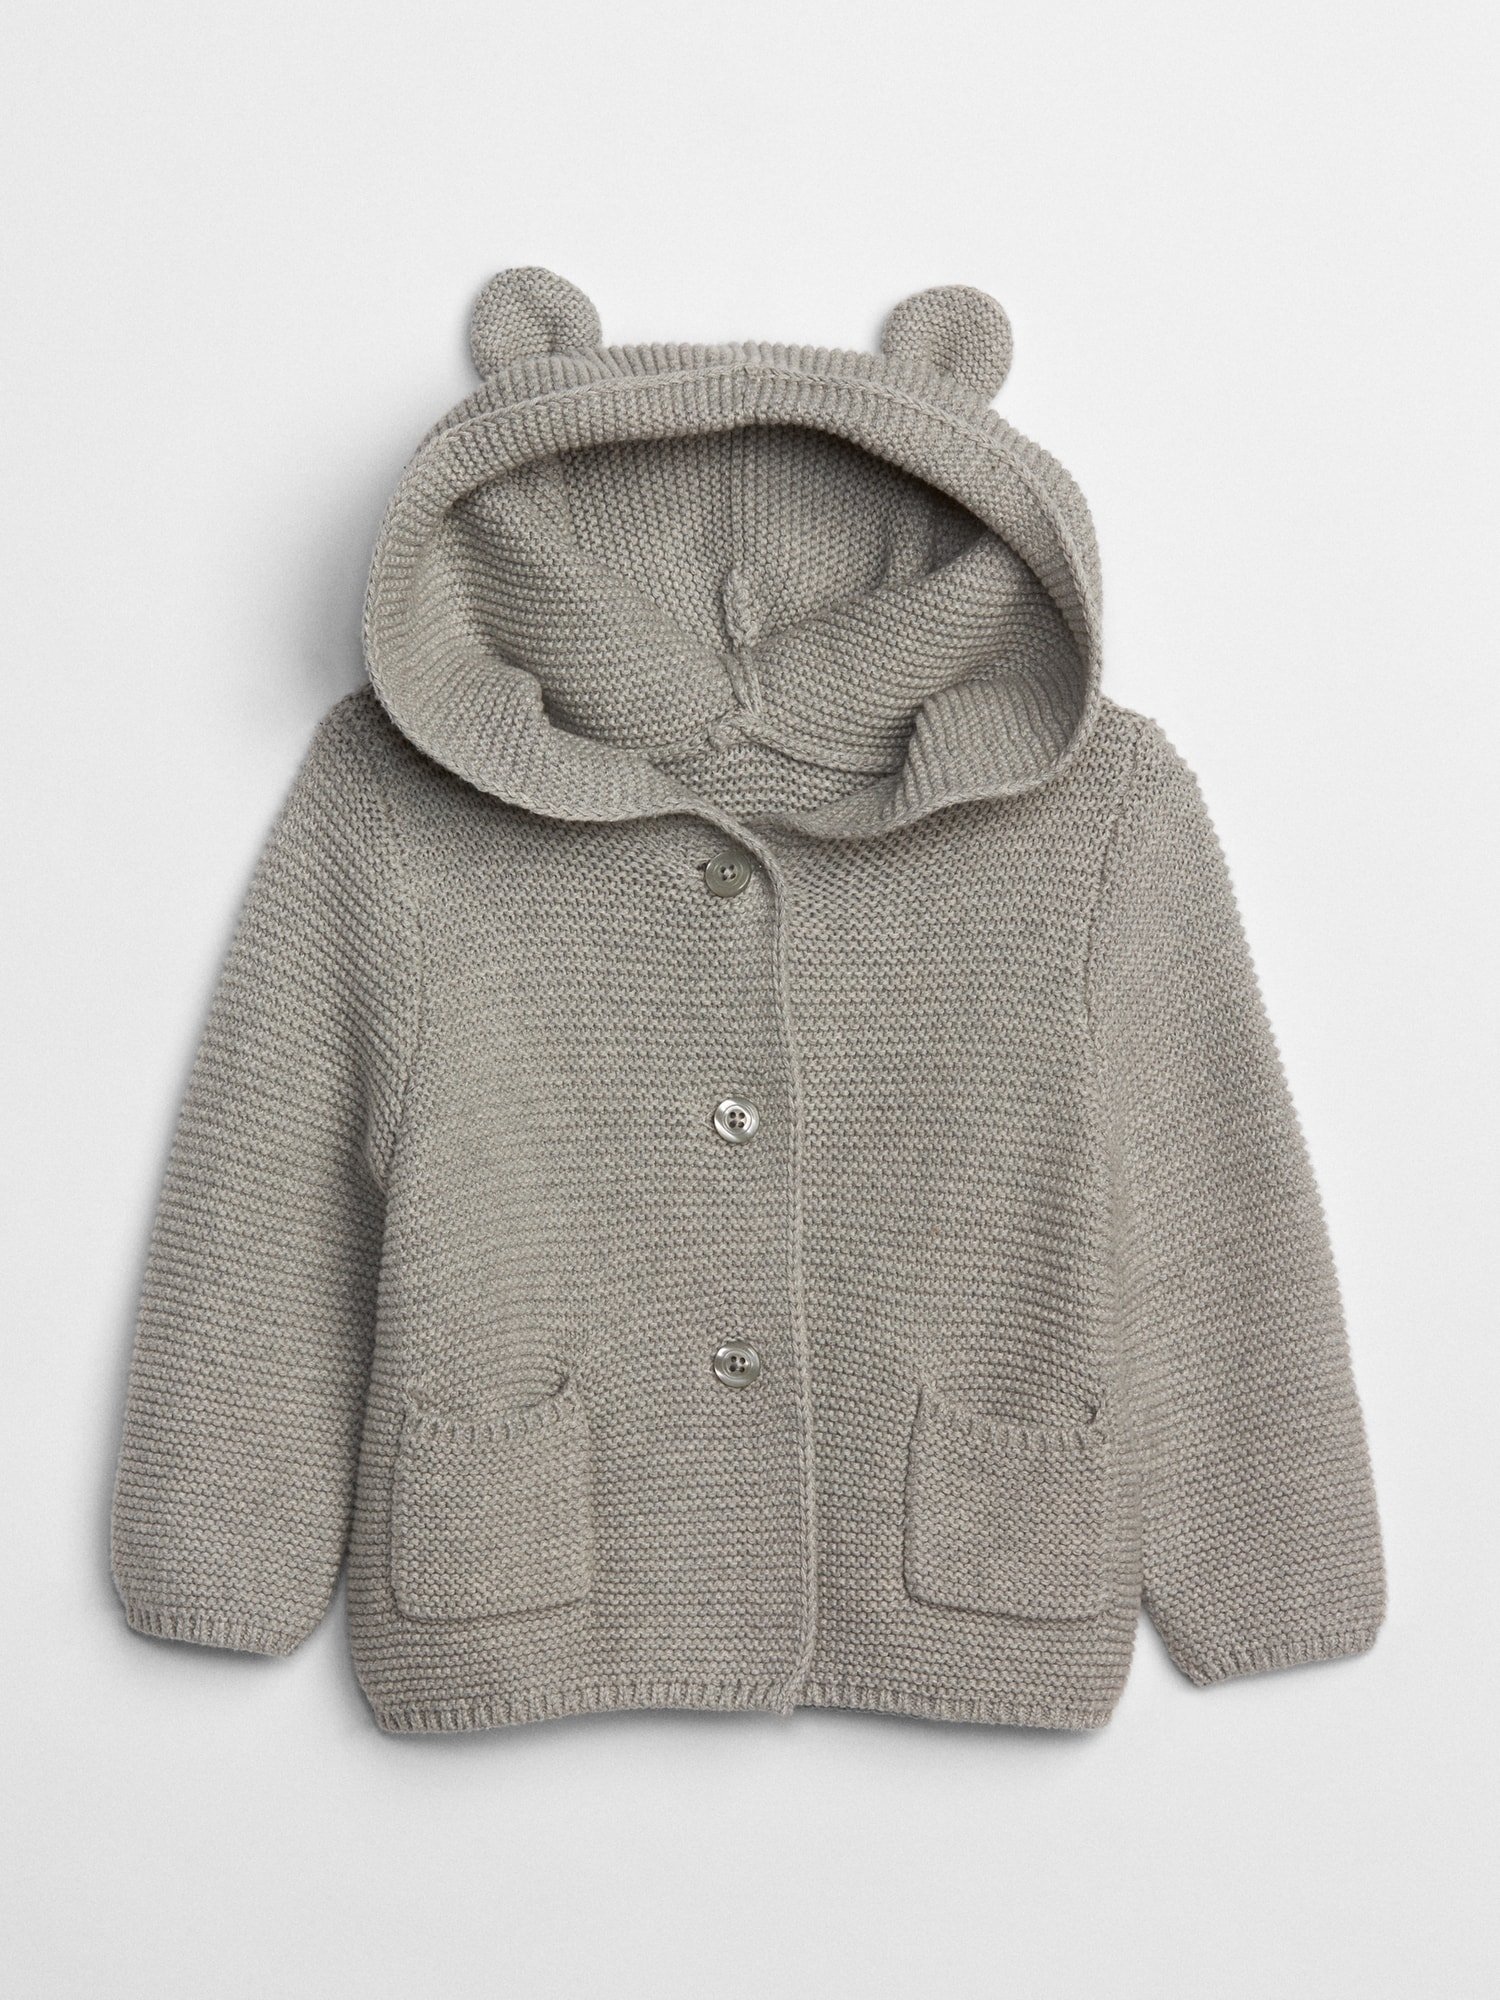 Fotografie Šedý holčičí baby svetr brannan bear sweater